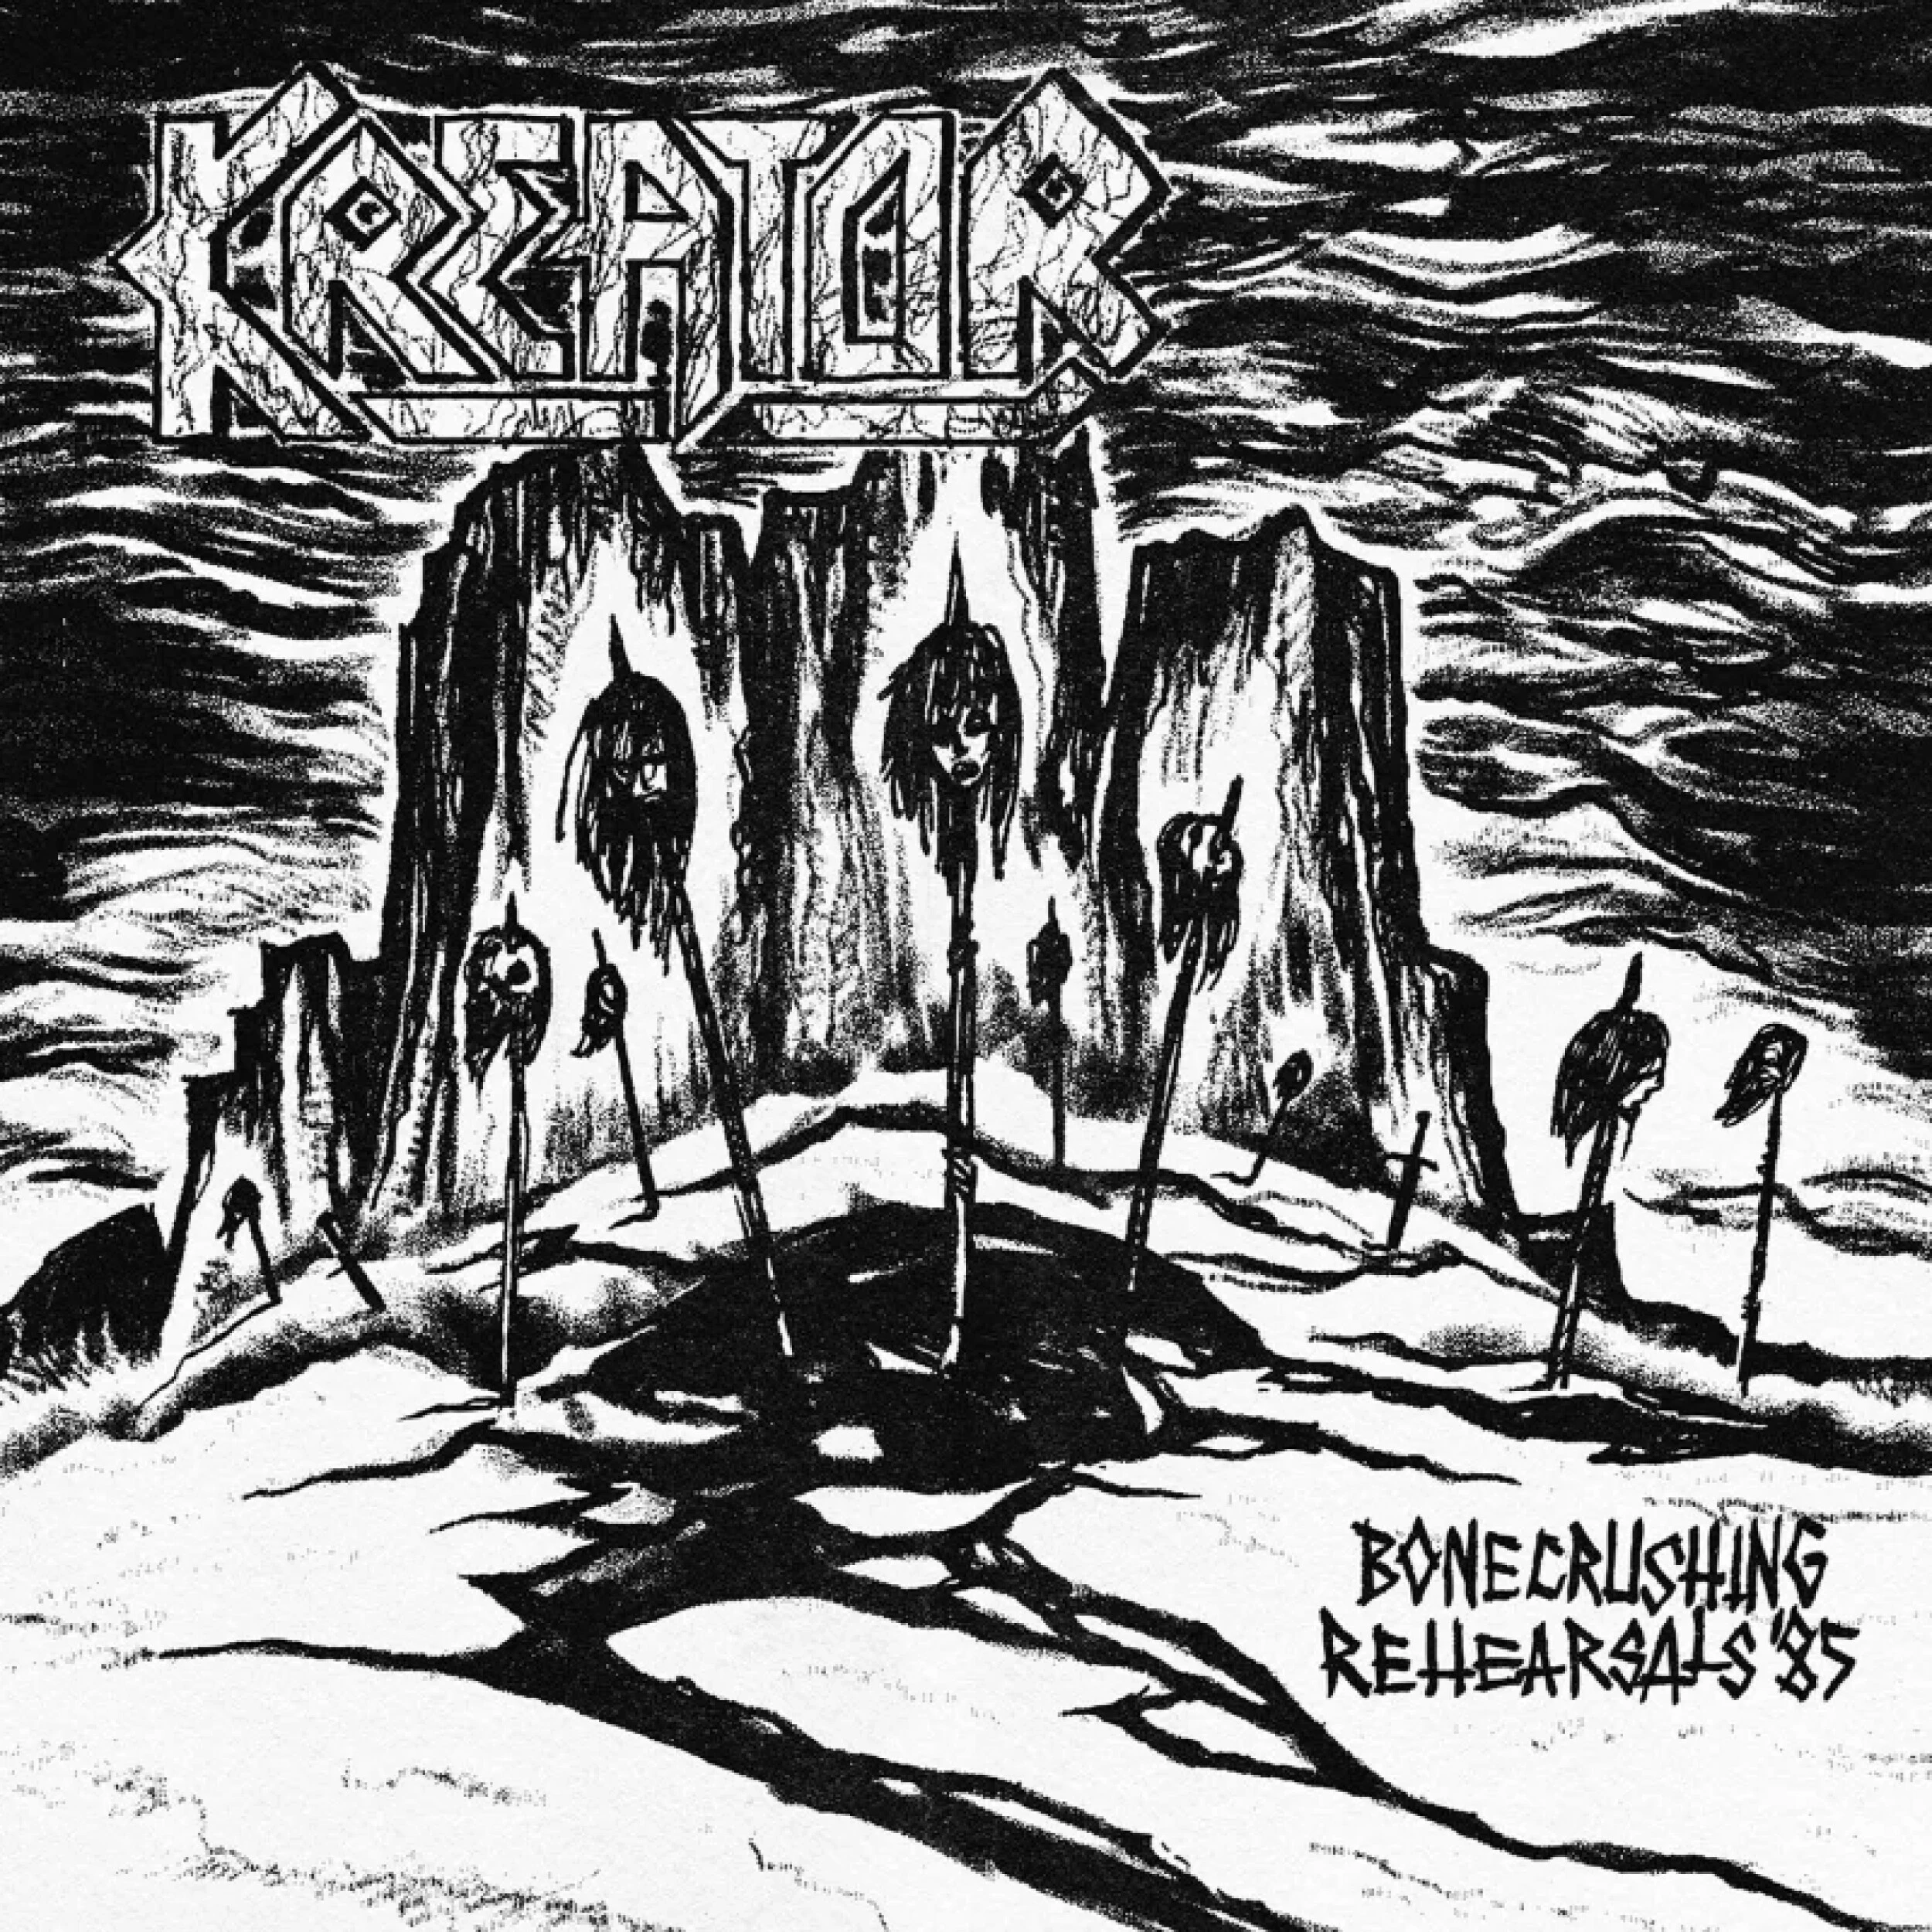 KREATOR - Bonecrushing Rehearsals '85 [WHITE LP]